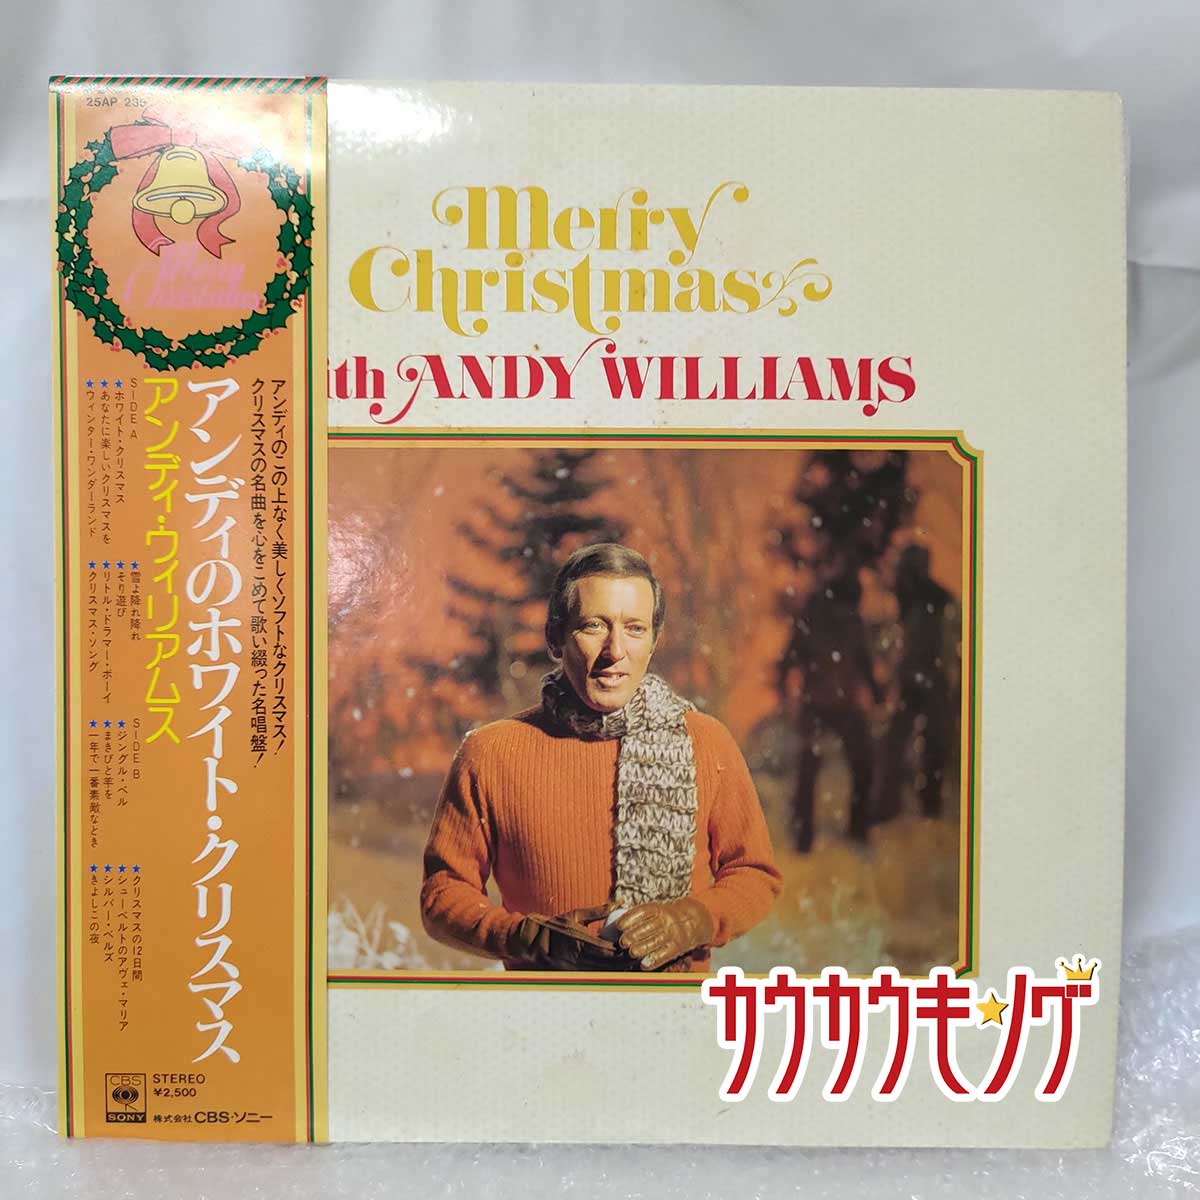 【中古】LP アンディ・ウィリアムス アンディのホワイト・クリスマス 帯付き 25AP 235